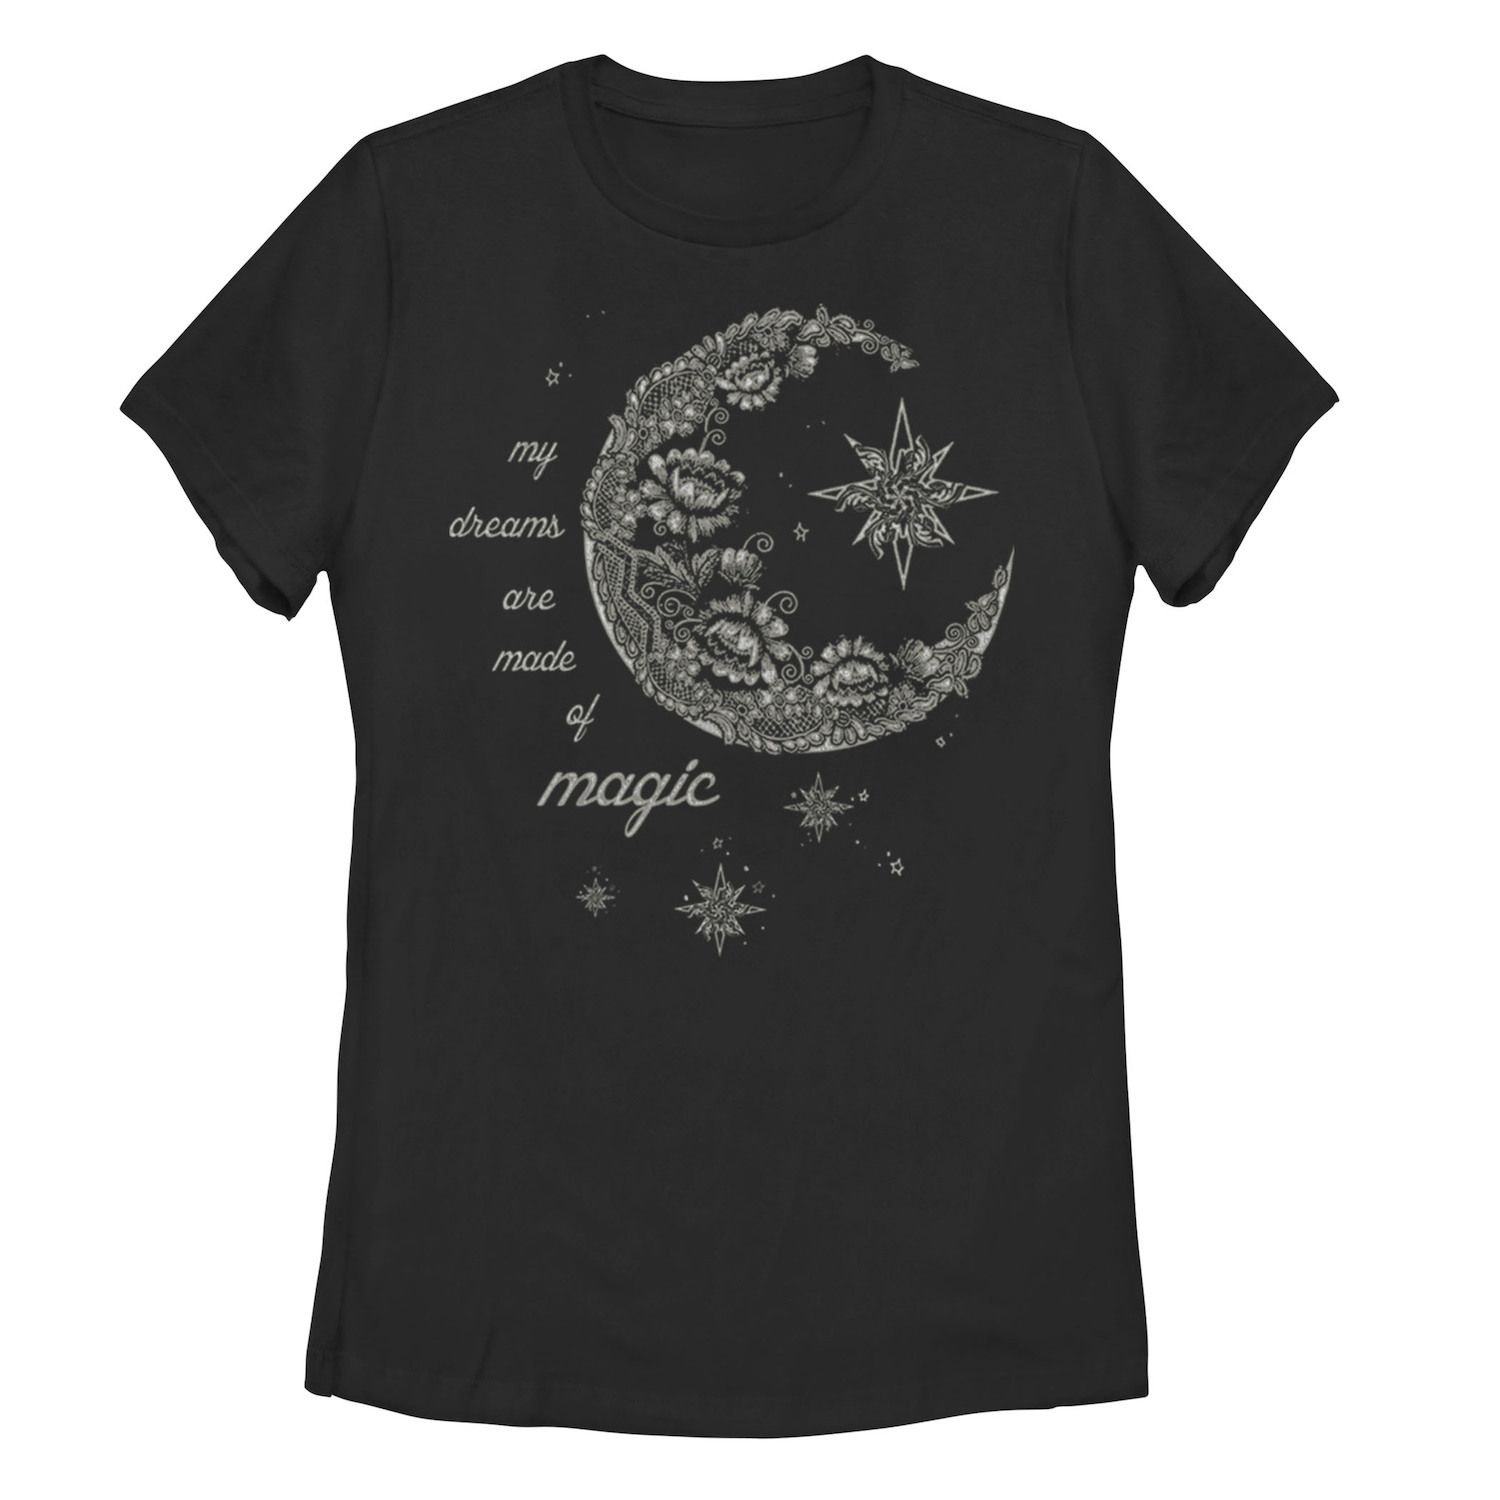 Детская футболка с рисунком «Лунный цветок» и галактическим рисунком, черный